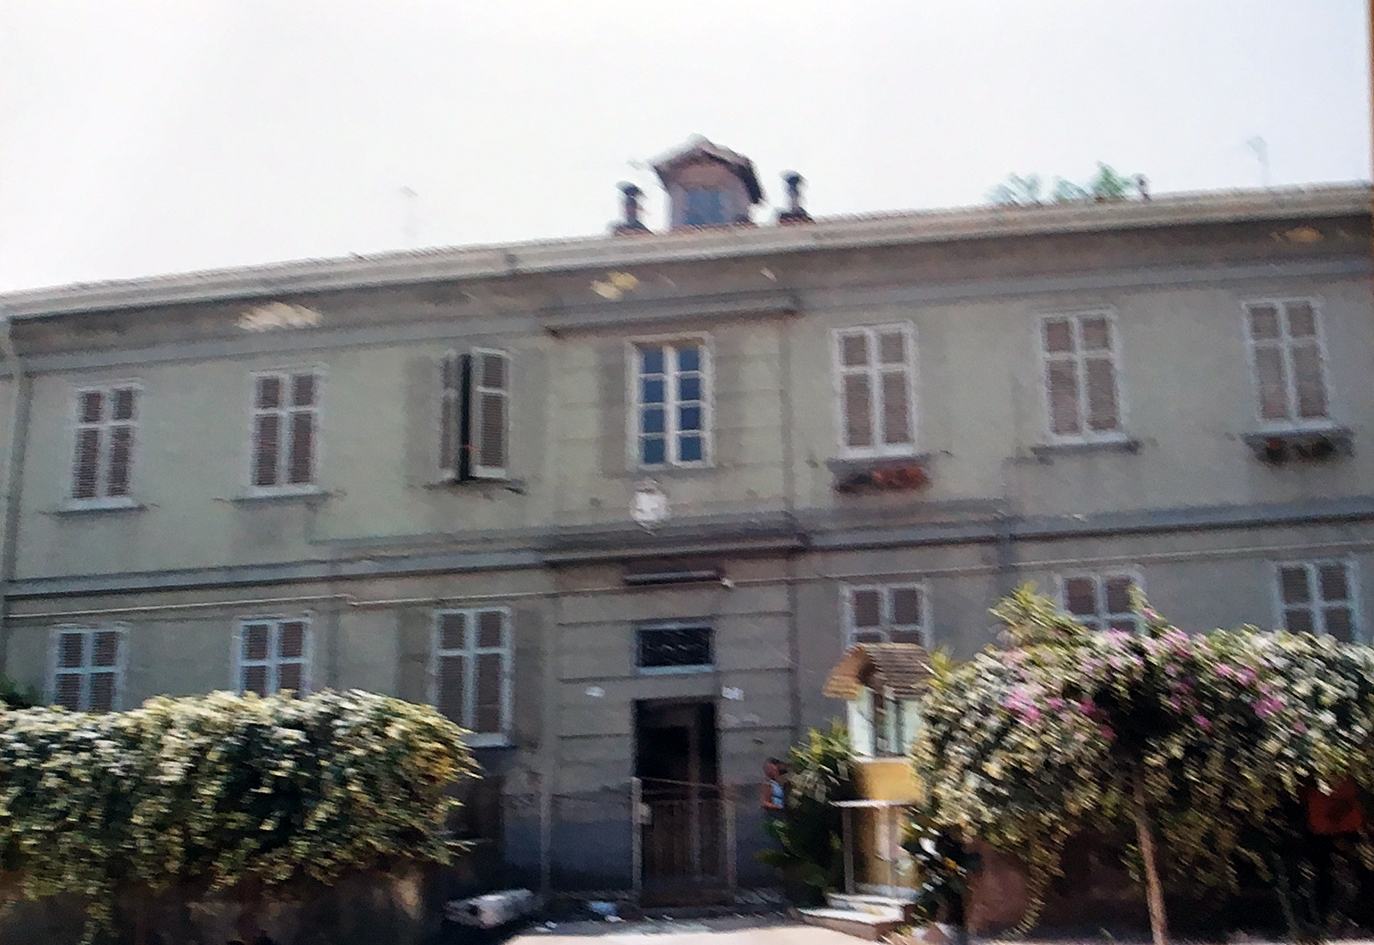 Palazzo residenziale_S.P. Pietro Romano 16,23,56,65 (palazzo, residenziale) - San Marcellino (CE) 